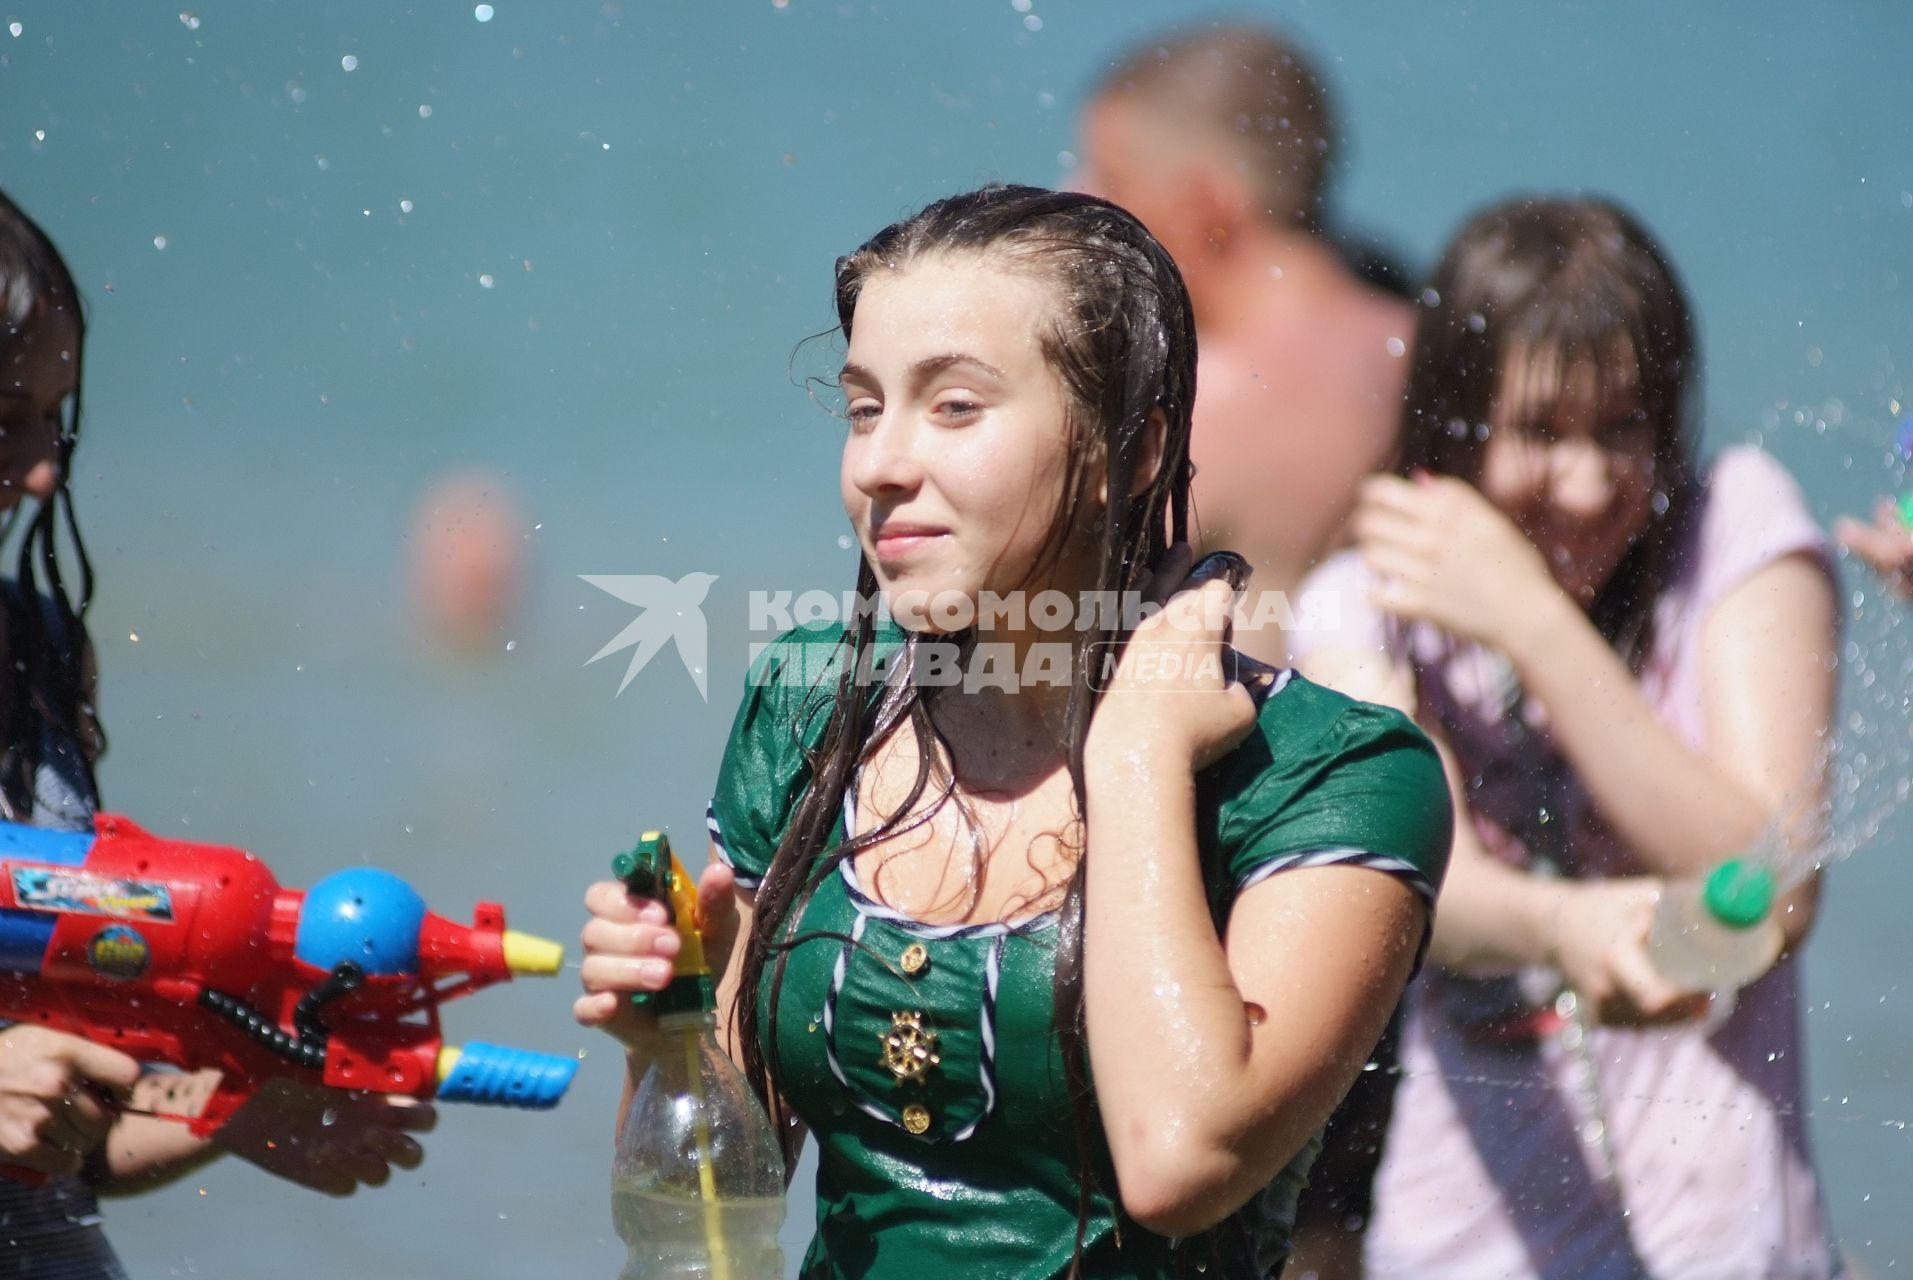 В Ставрополе прошла `водная битва`. Участники мокрой схватки хотели разбиться на команды, но потом решили - каждый за себя!